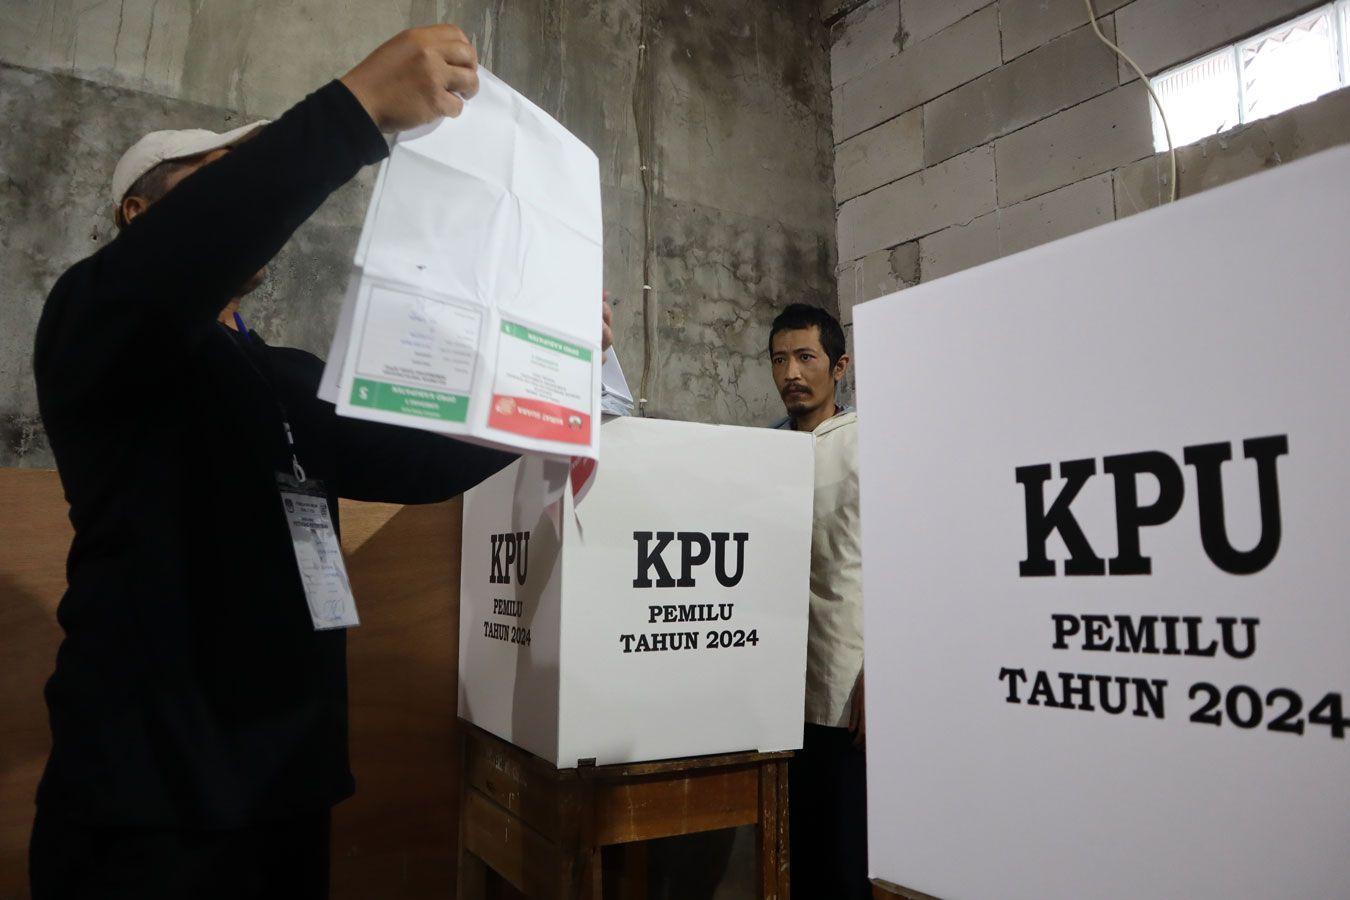 Petugas Kelompok Penyelenggara Pemungutan Suara (KPPS) dari Tempat Pemungutan Suara (TPS) 18 di Dusun Citeureup, RW 10 Desa Cilayung, Kecamatan Jatinangor, Kabupaten Sumedang sedang membantu Orang Dalam Gangguan Jiwa (ODGJ) memberikan hak suaranya dalam Pemilu 2024 pada 14 Februari 2024.